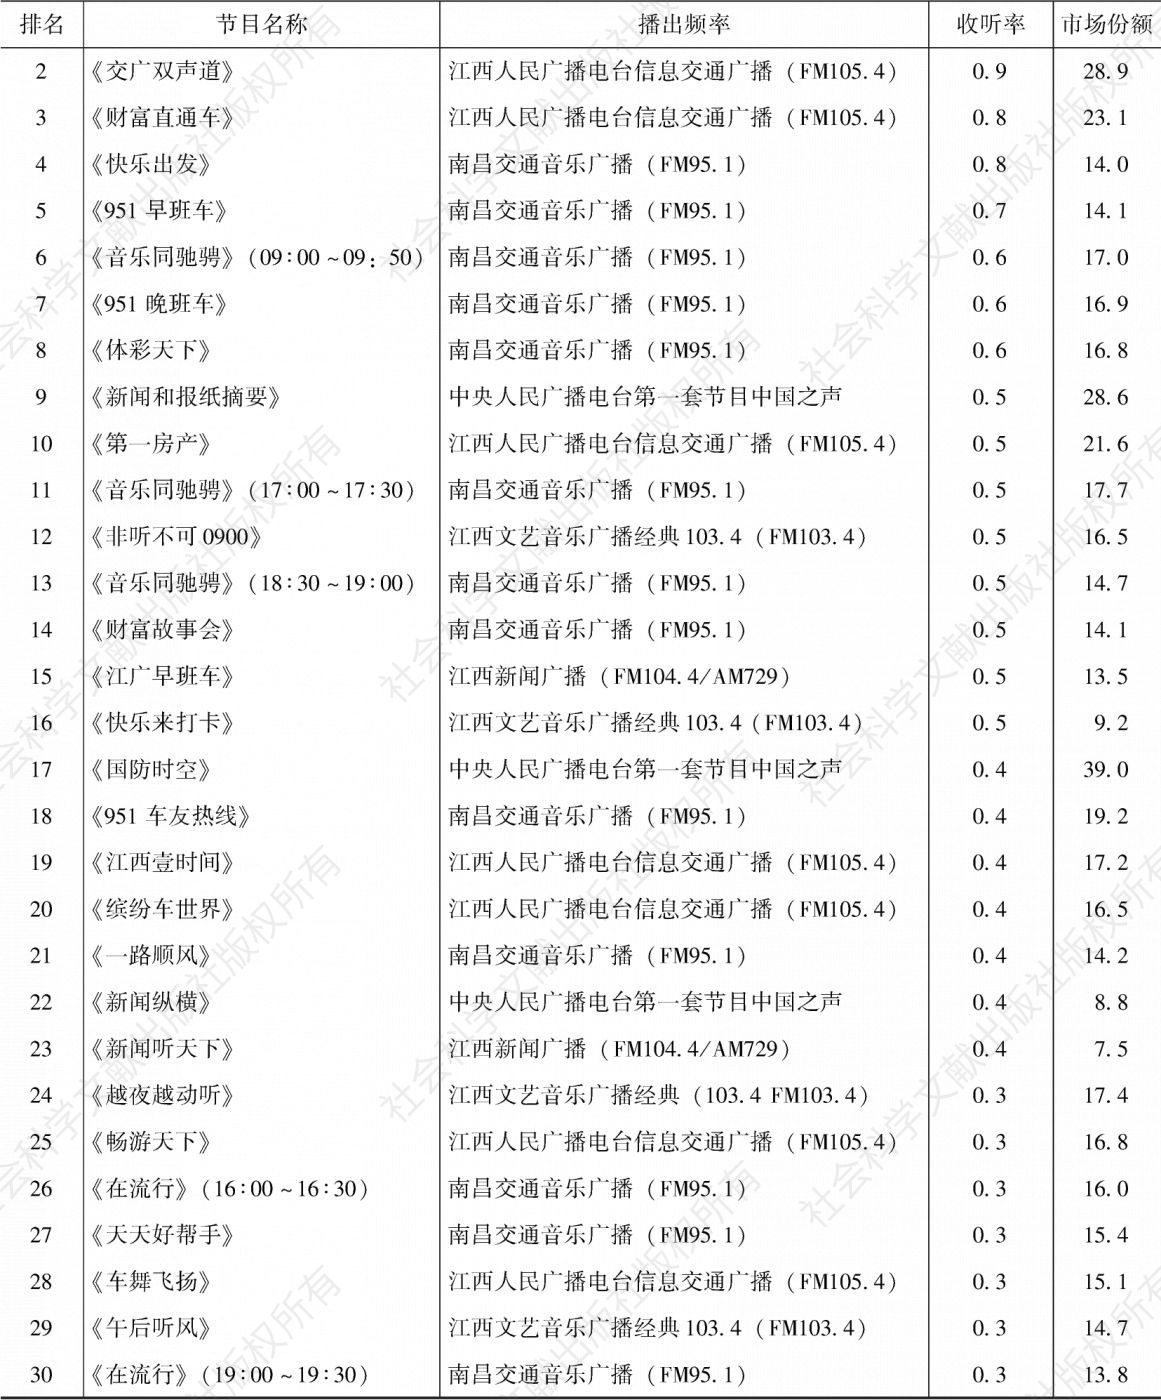 表4.12.7 2020年上半年南昌市场收听率排名前30的节目-续表